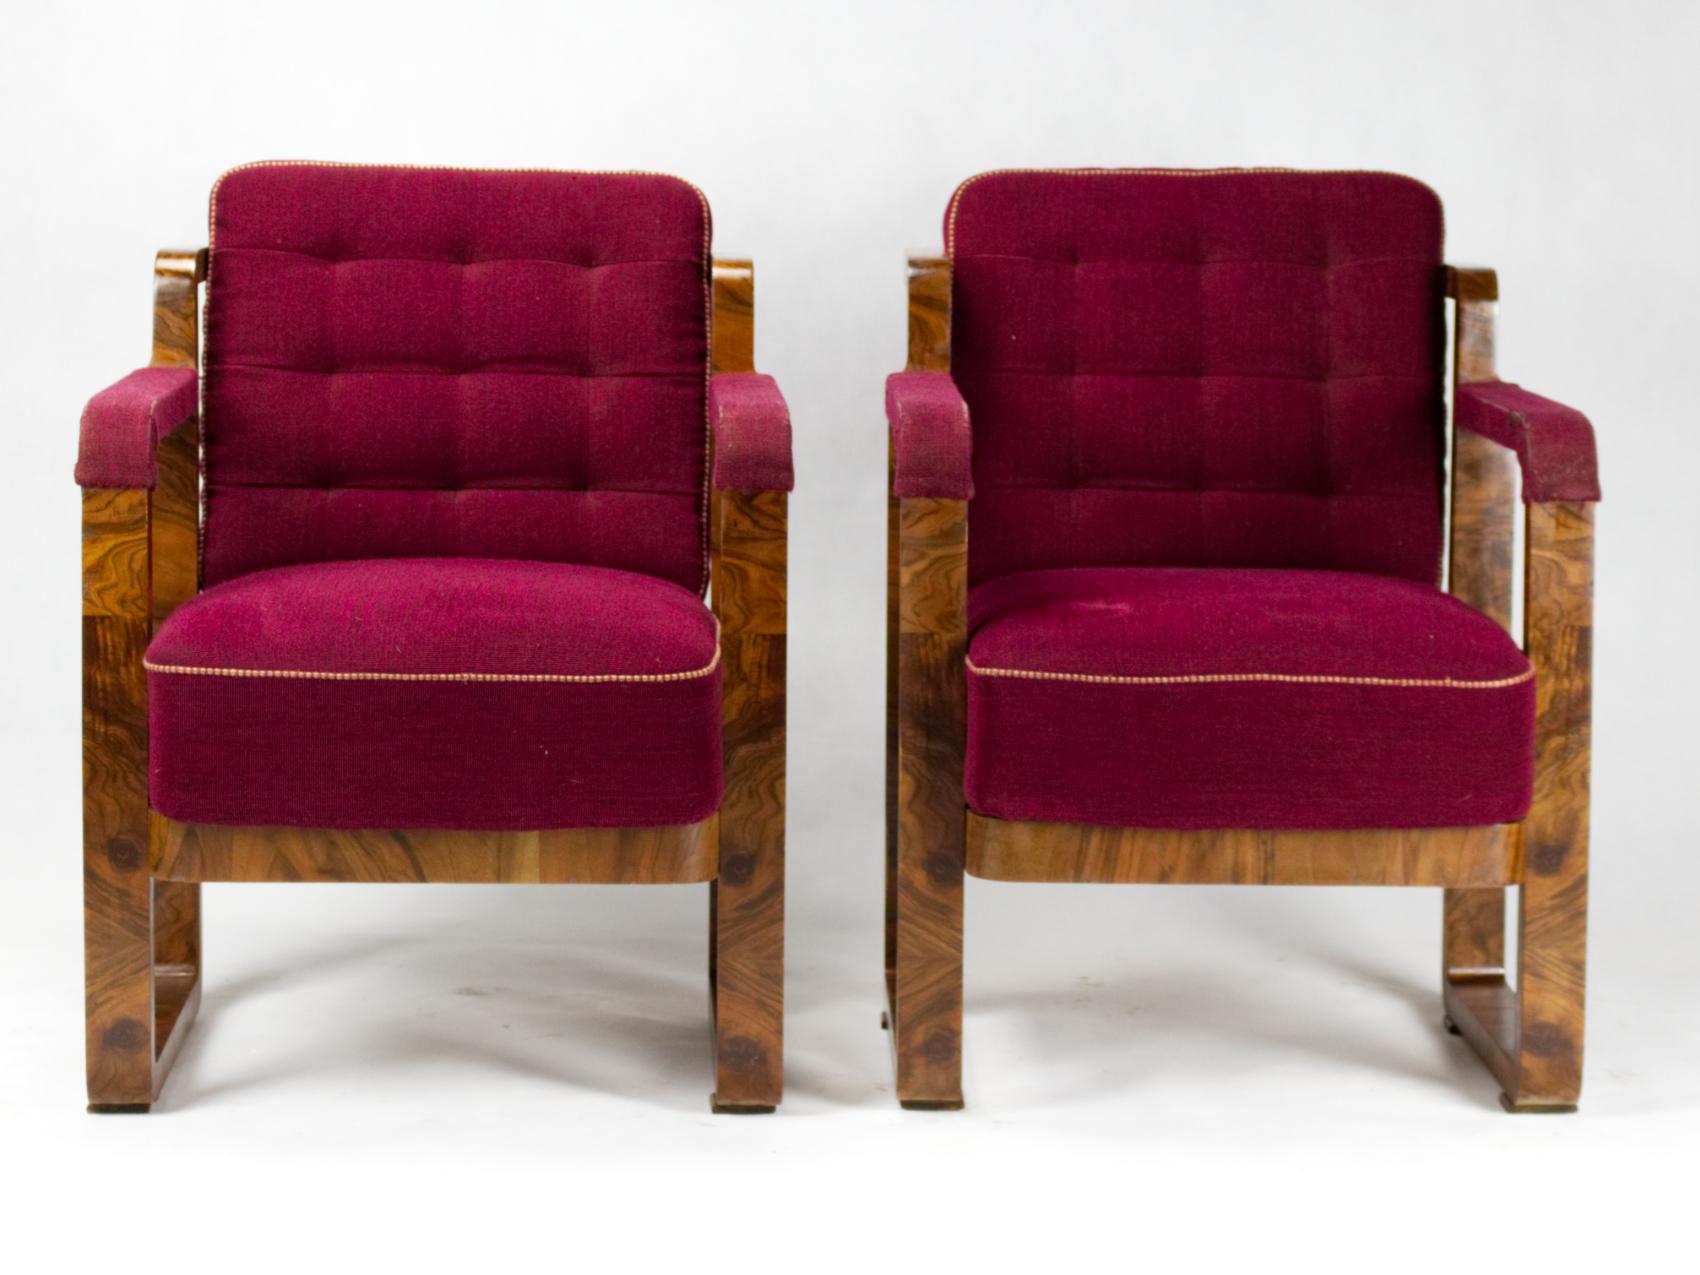 Pair of rare Art Deco armchairs in good original condition, circa 1930.